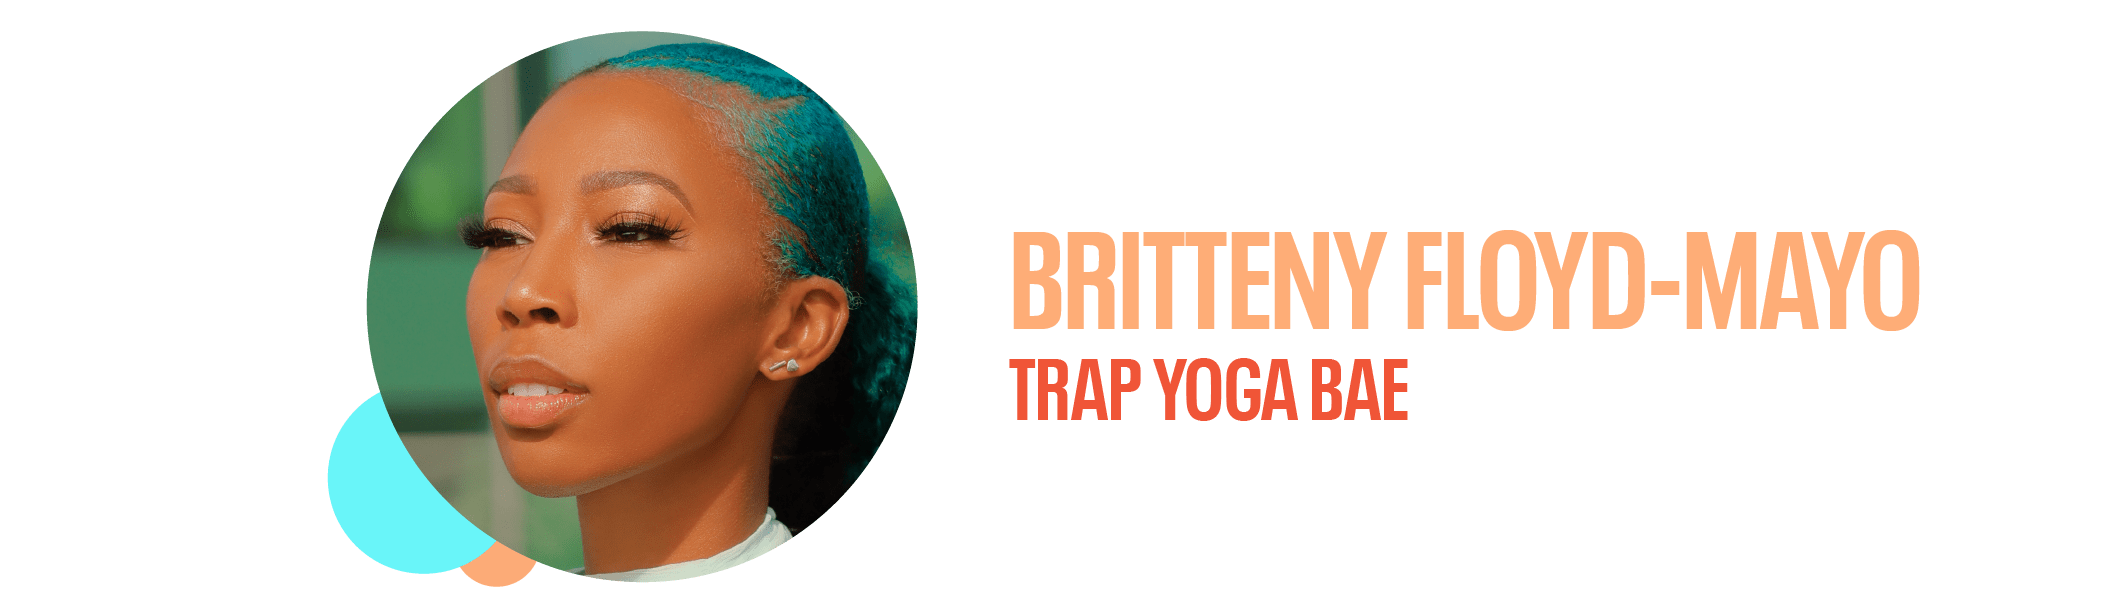 Brittney Floyd-Mayo, Trap Yoga Bae